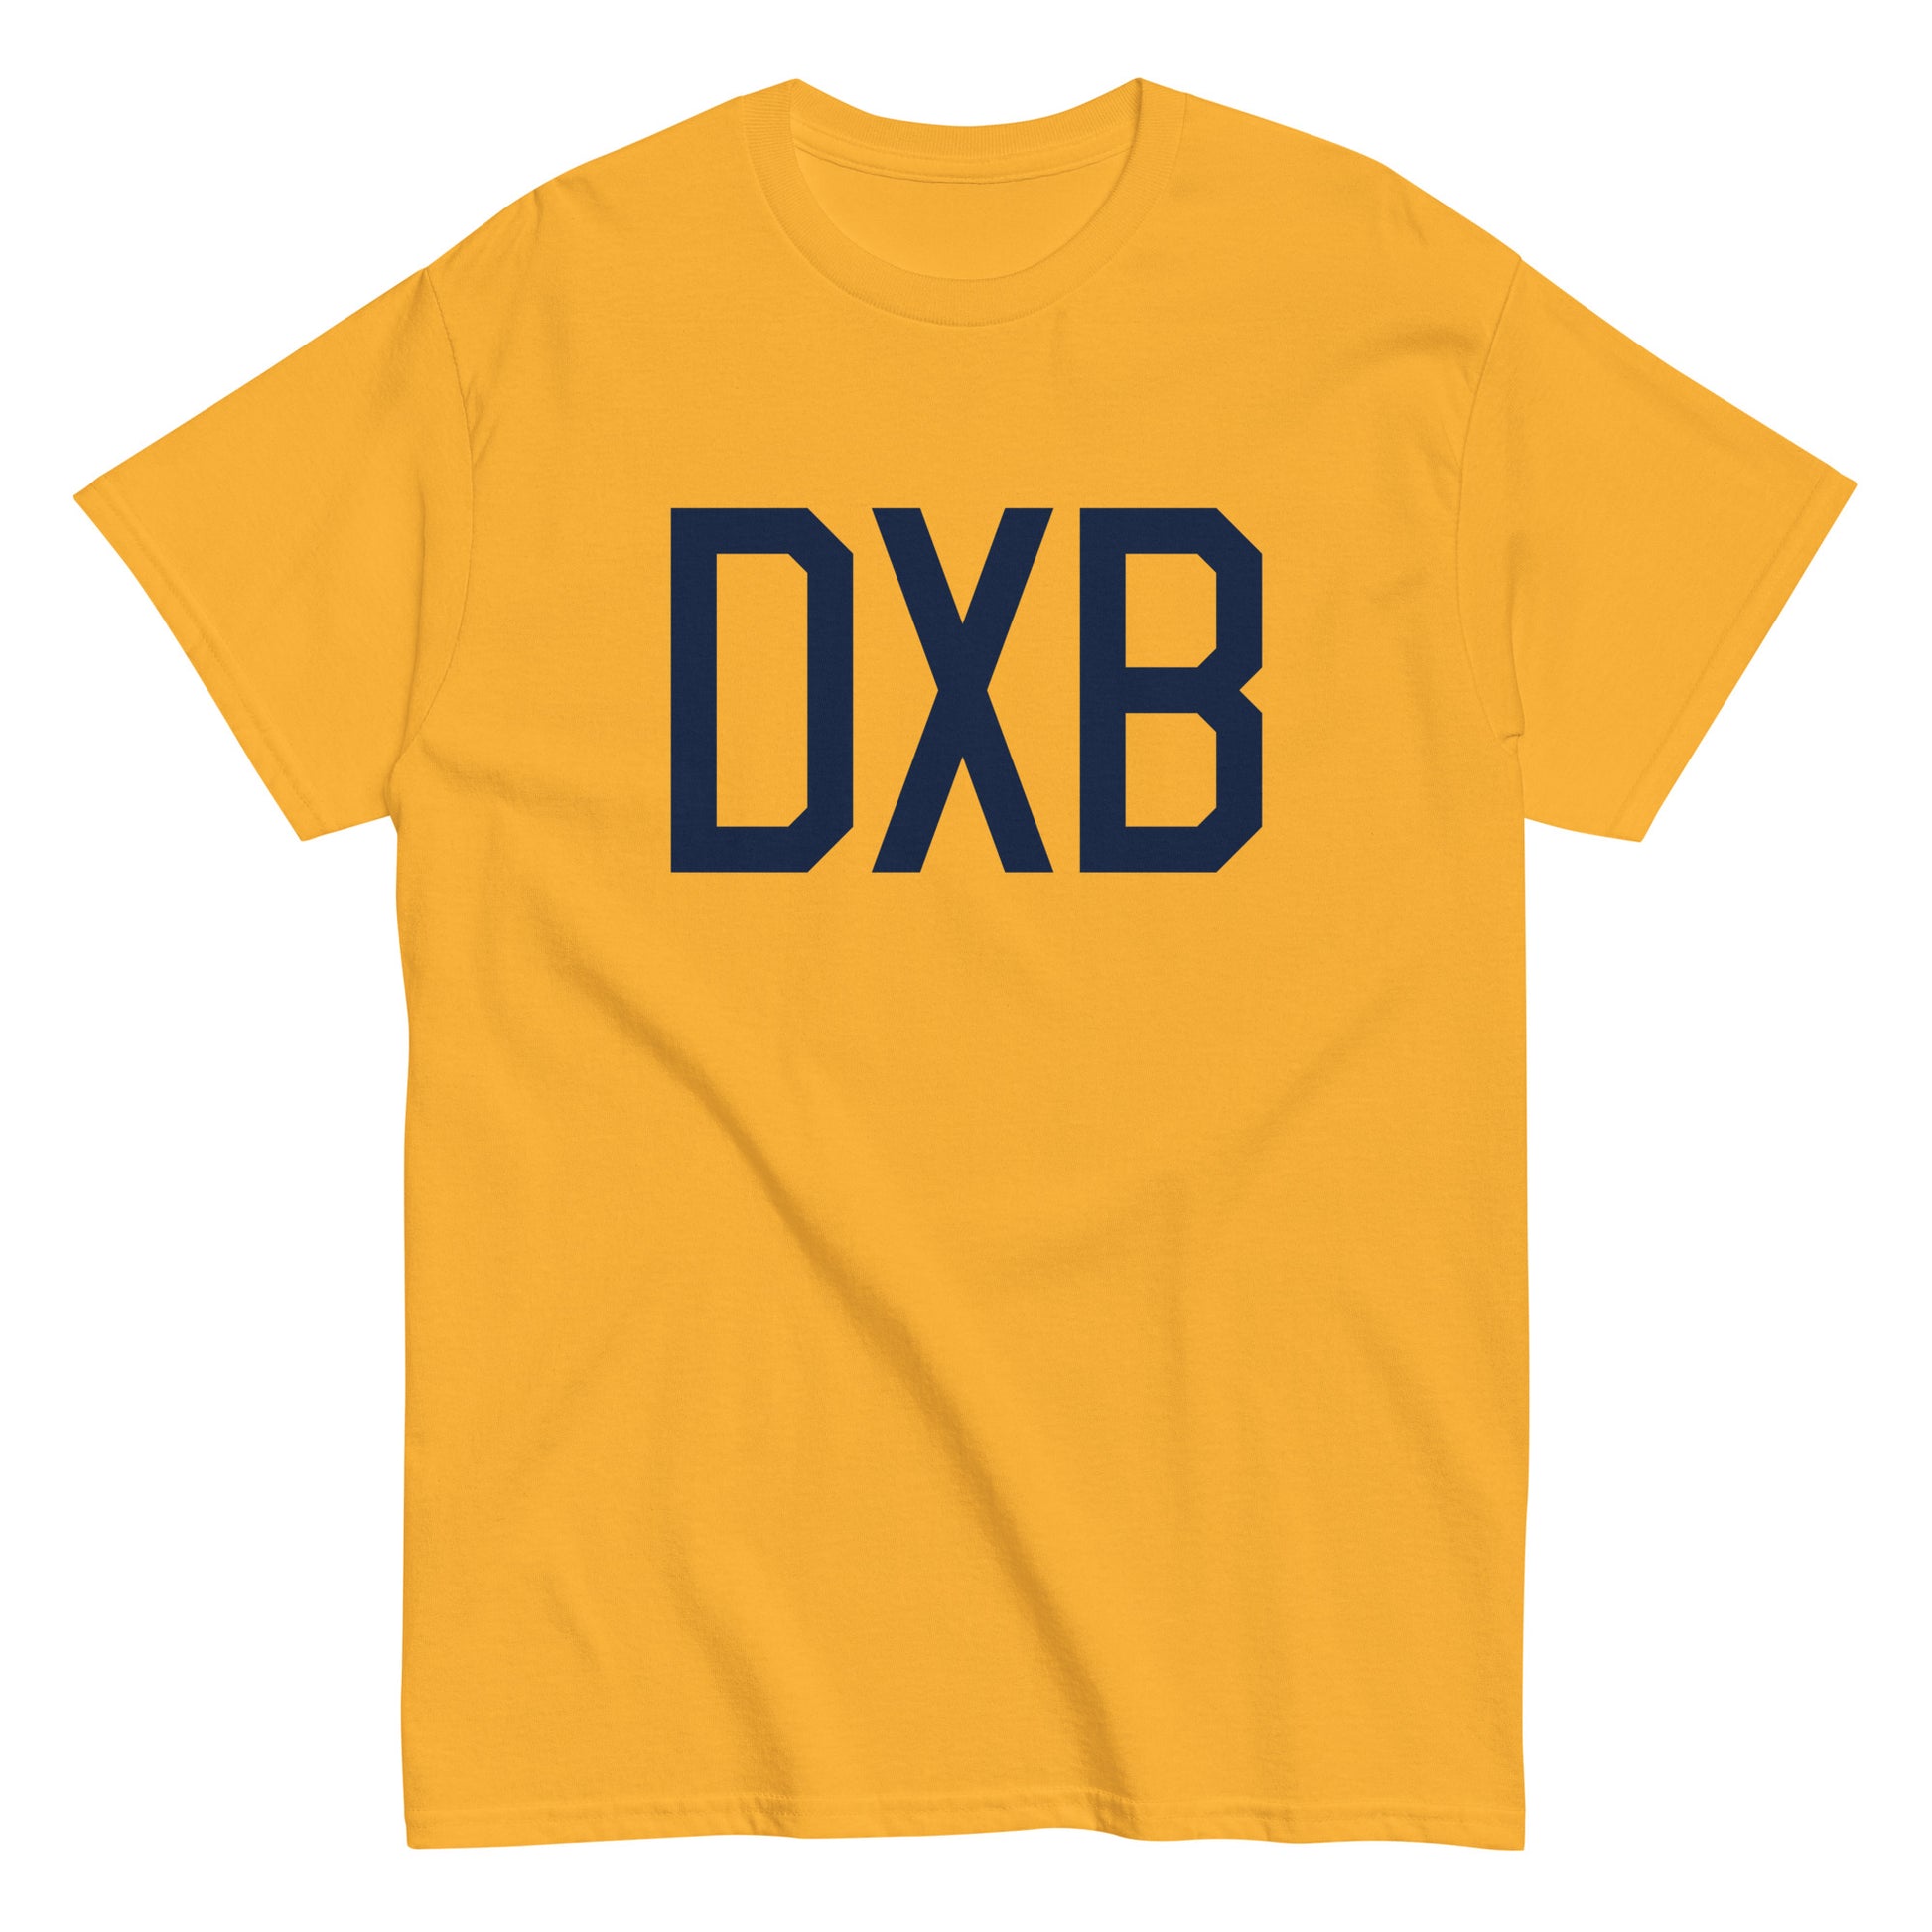 Aviation-Theme Men's T-Shirt - Navy Blue Graphic • DXB Dubai • YHM Designs - Image 01